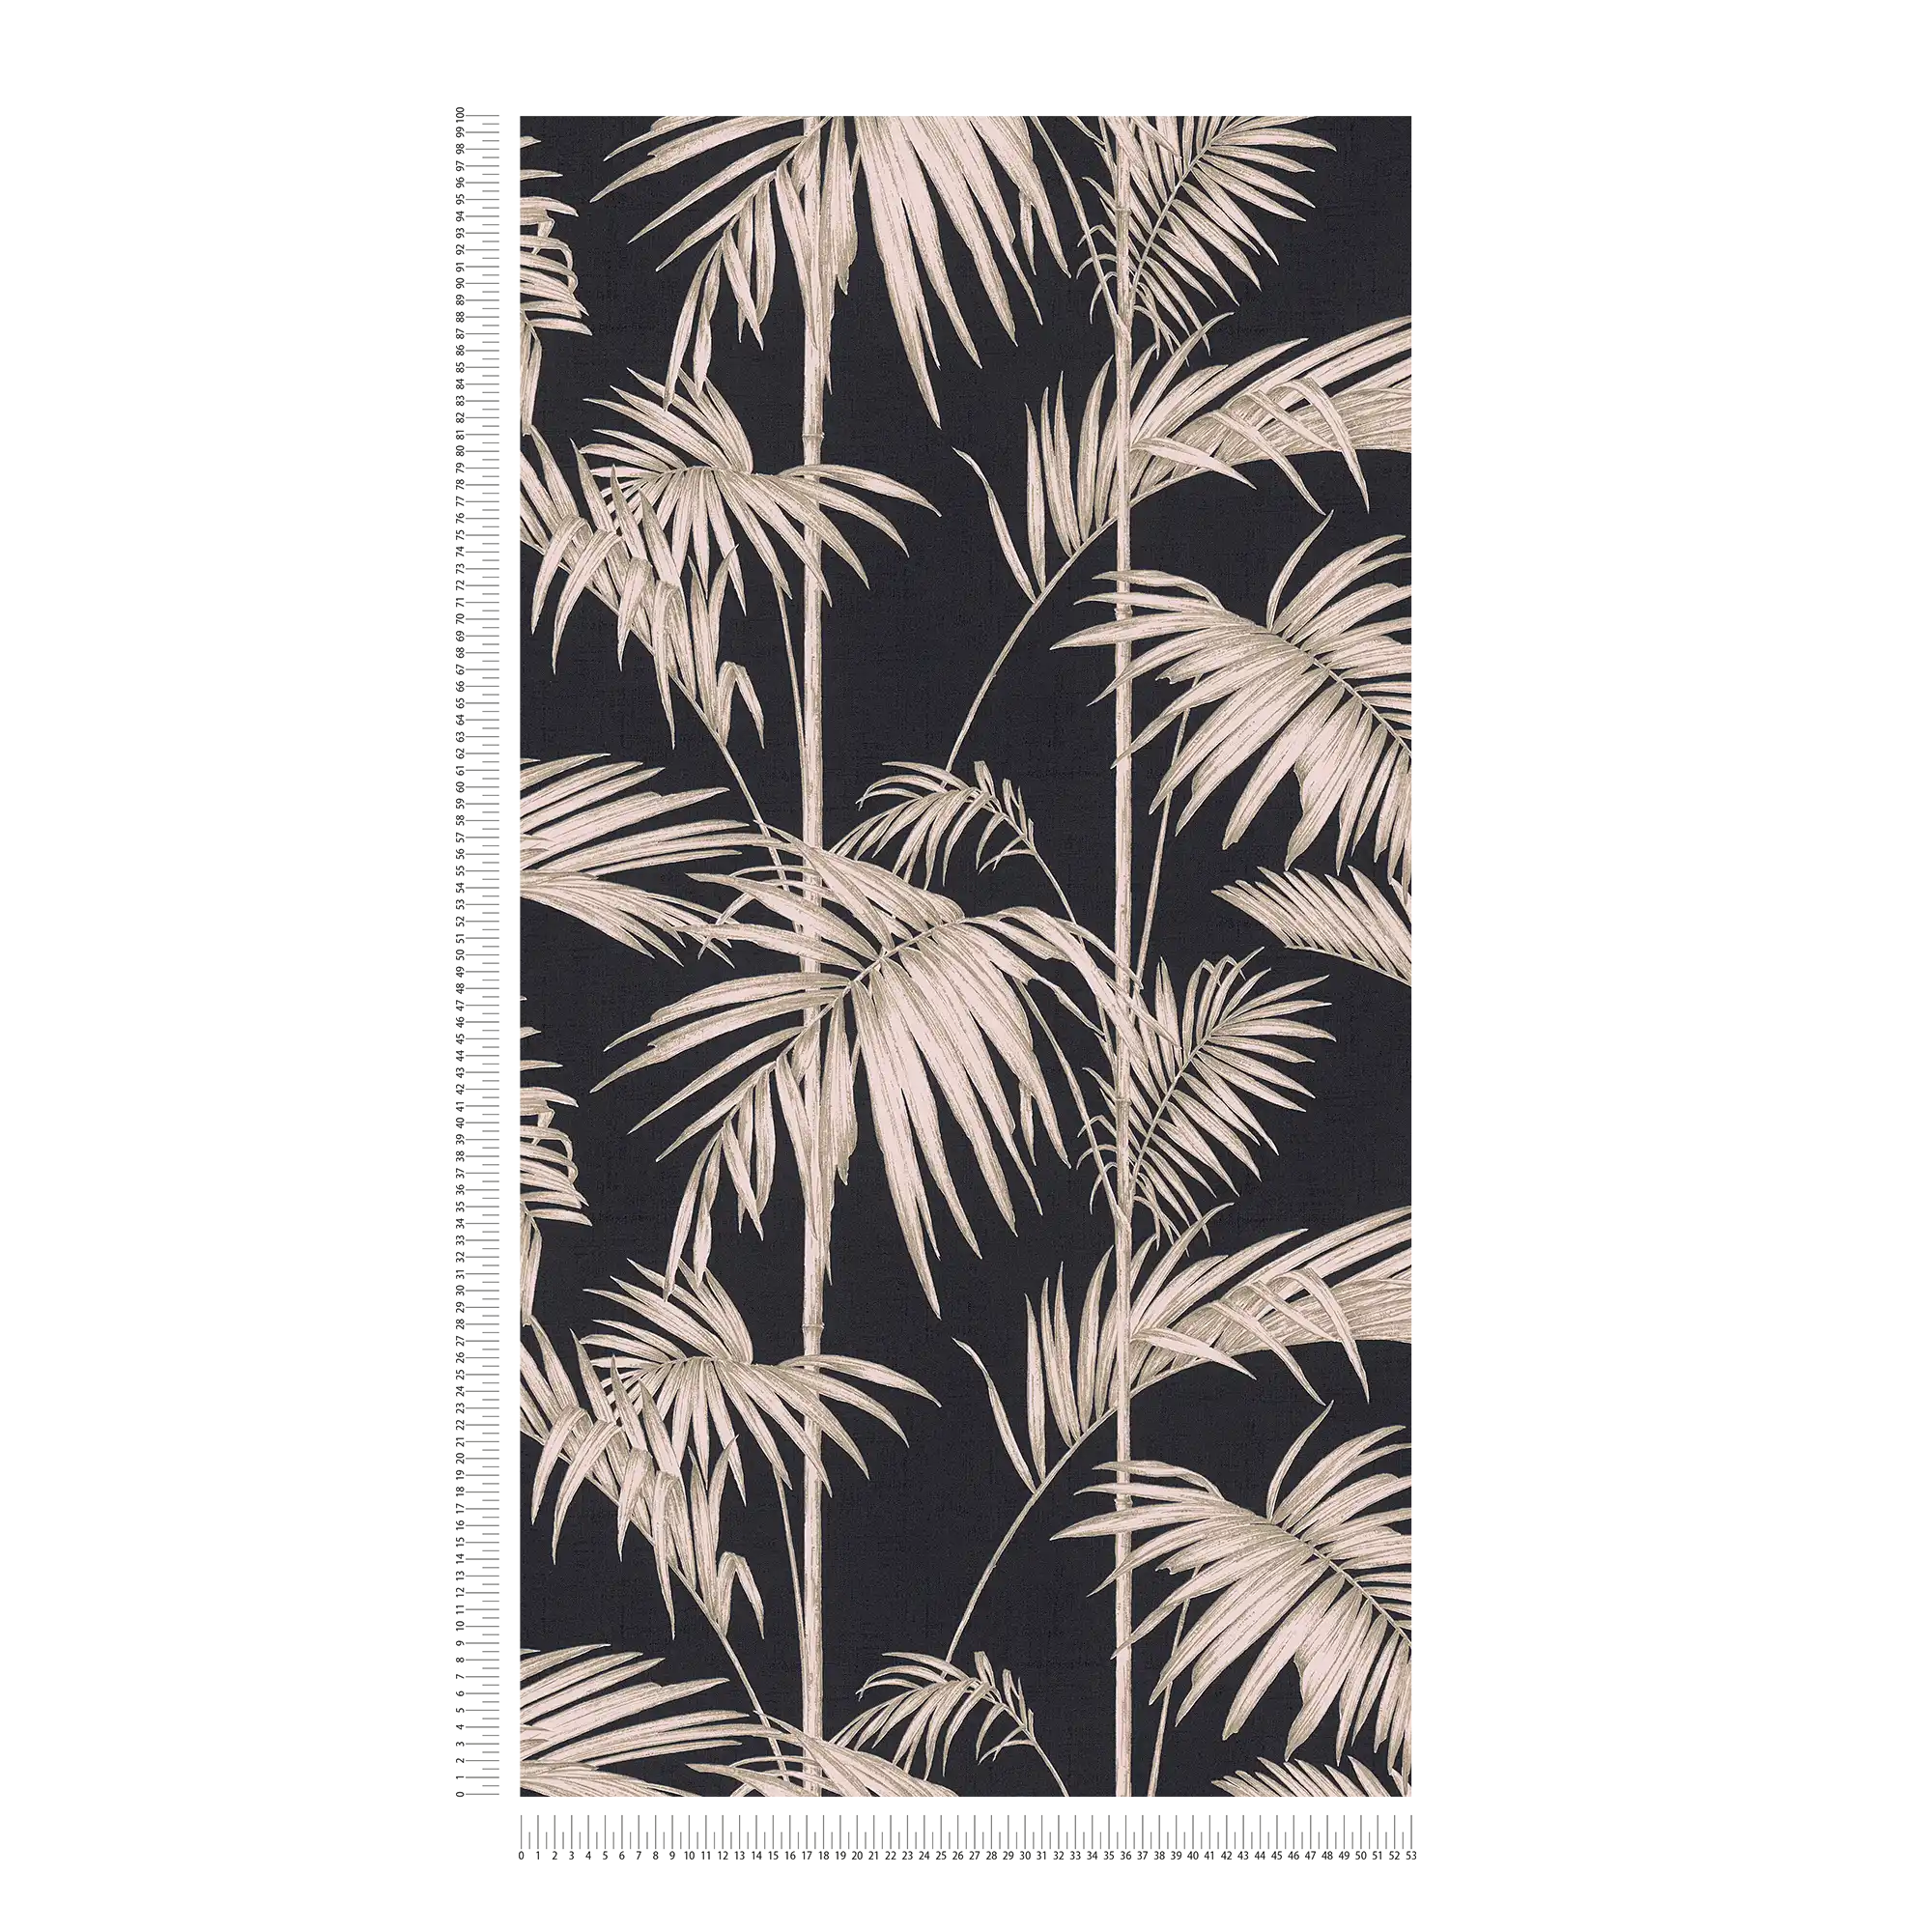             Papier peint naturel feuilles de palmier, bambou - rose, bronze, noir
        